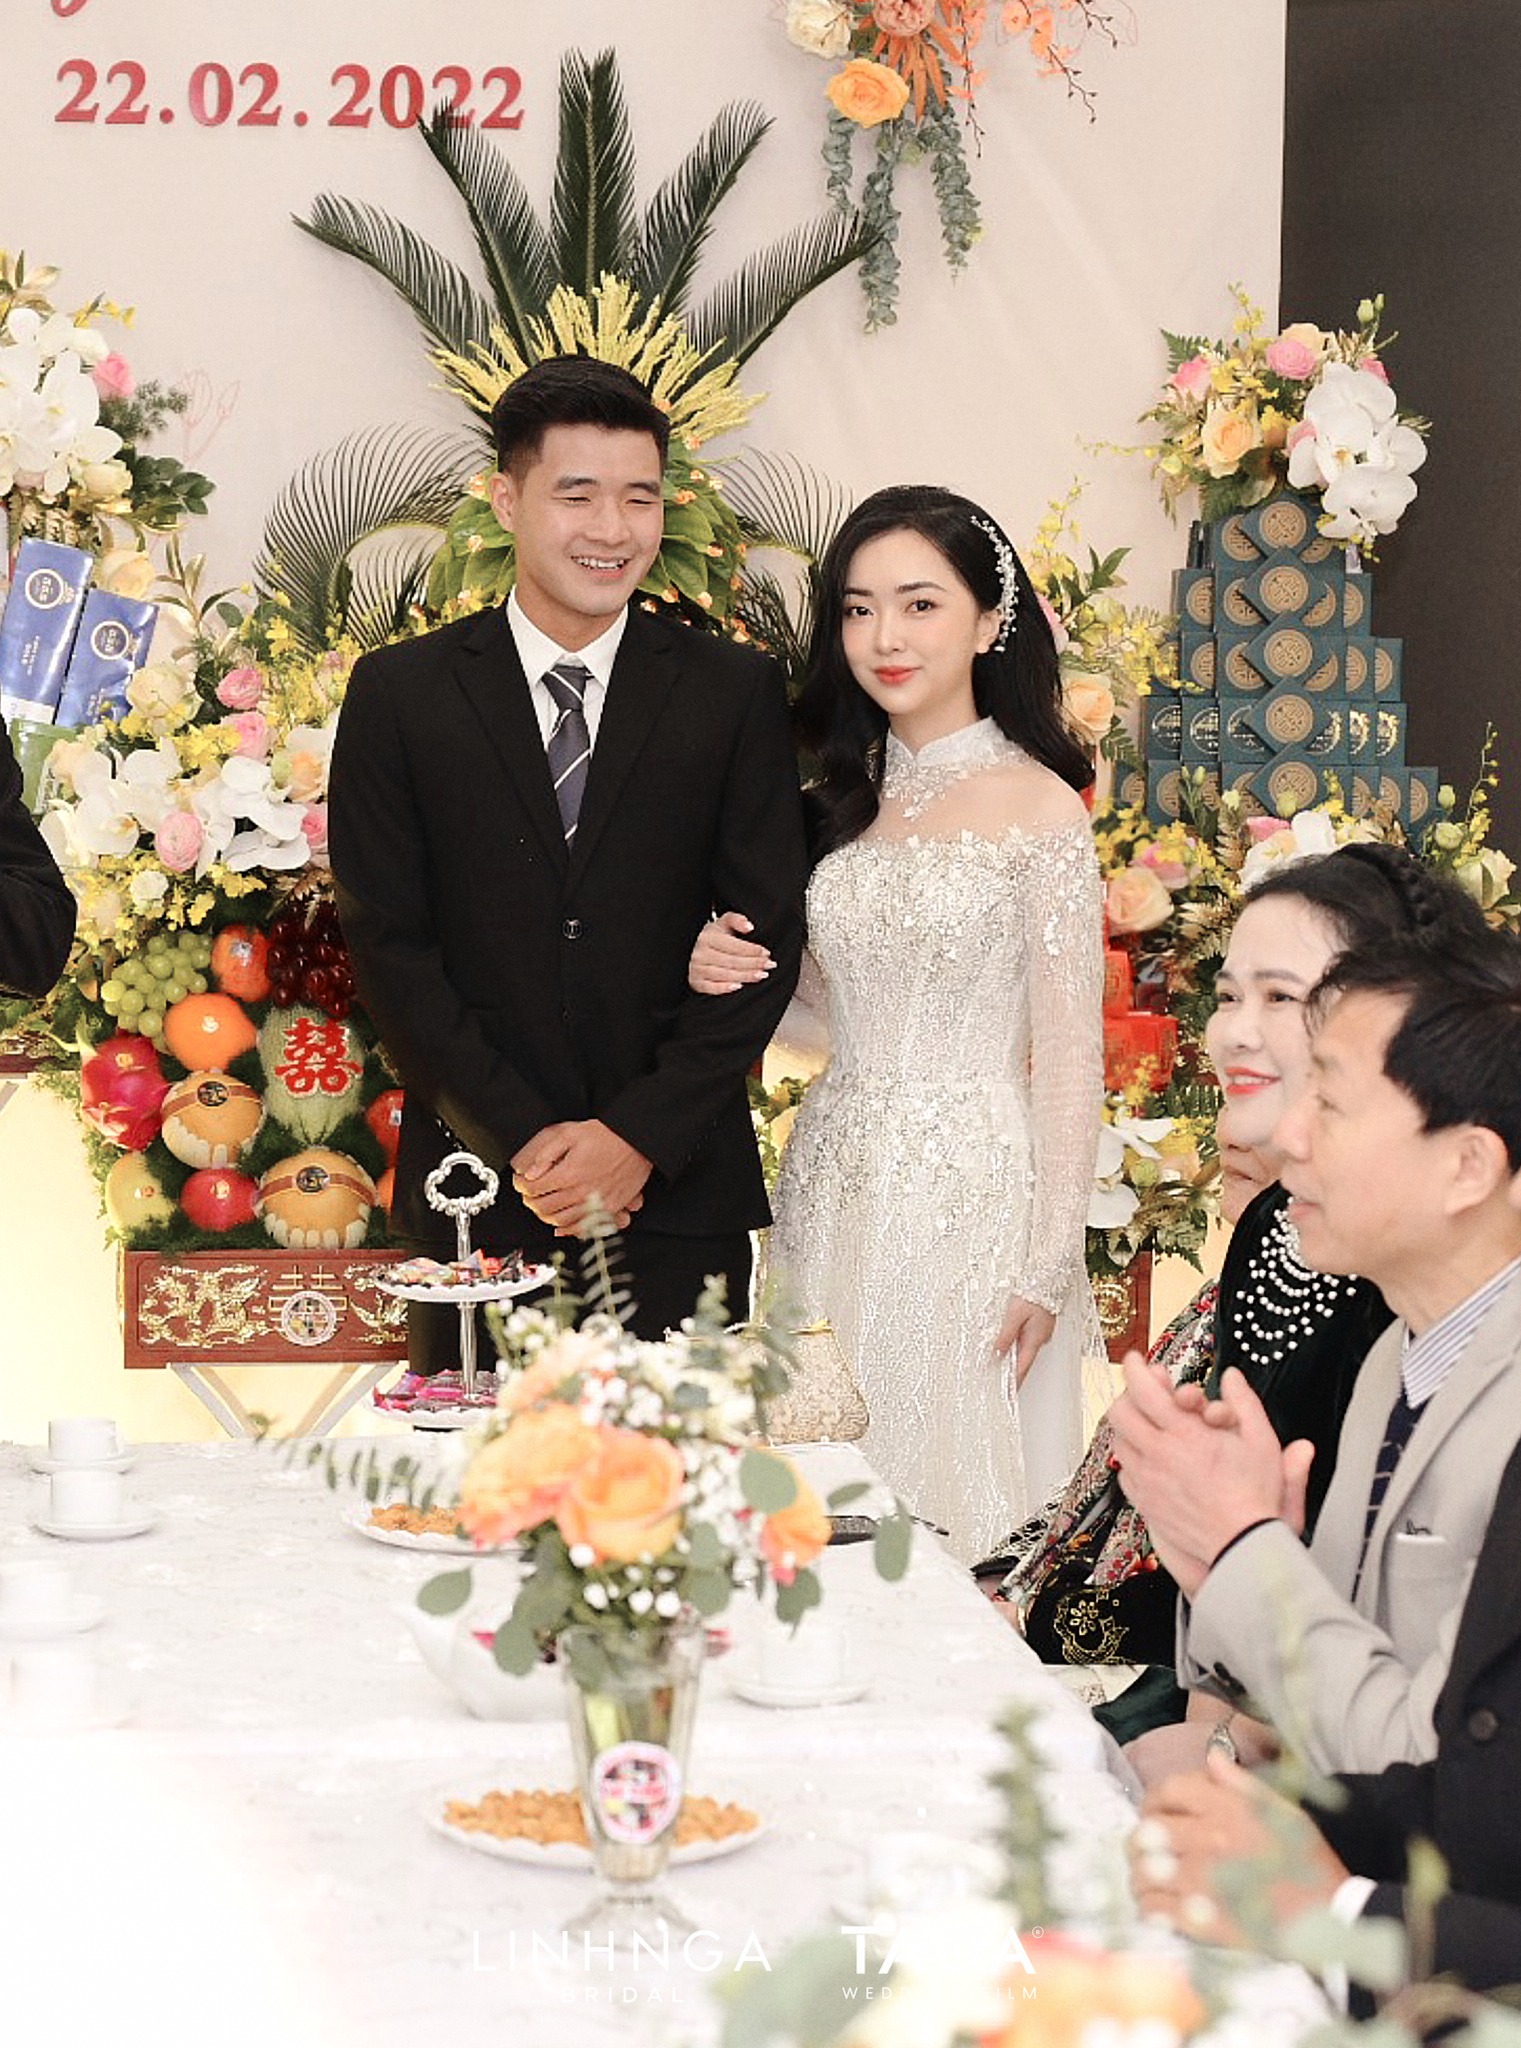 Hà Đức Chinh và bạn gái Mai Hà Trang đính hôn, nhan sắc cô dâu xinh đẹp rạng rỡ